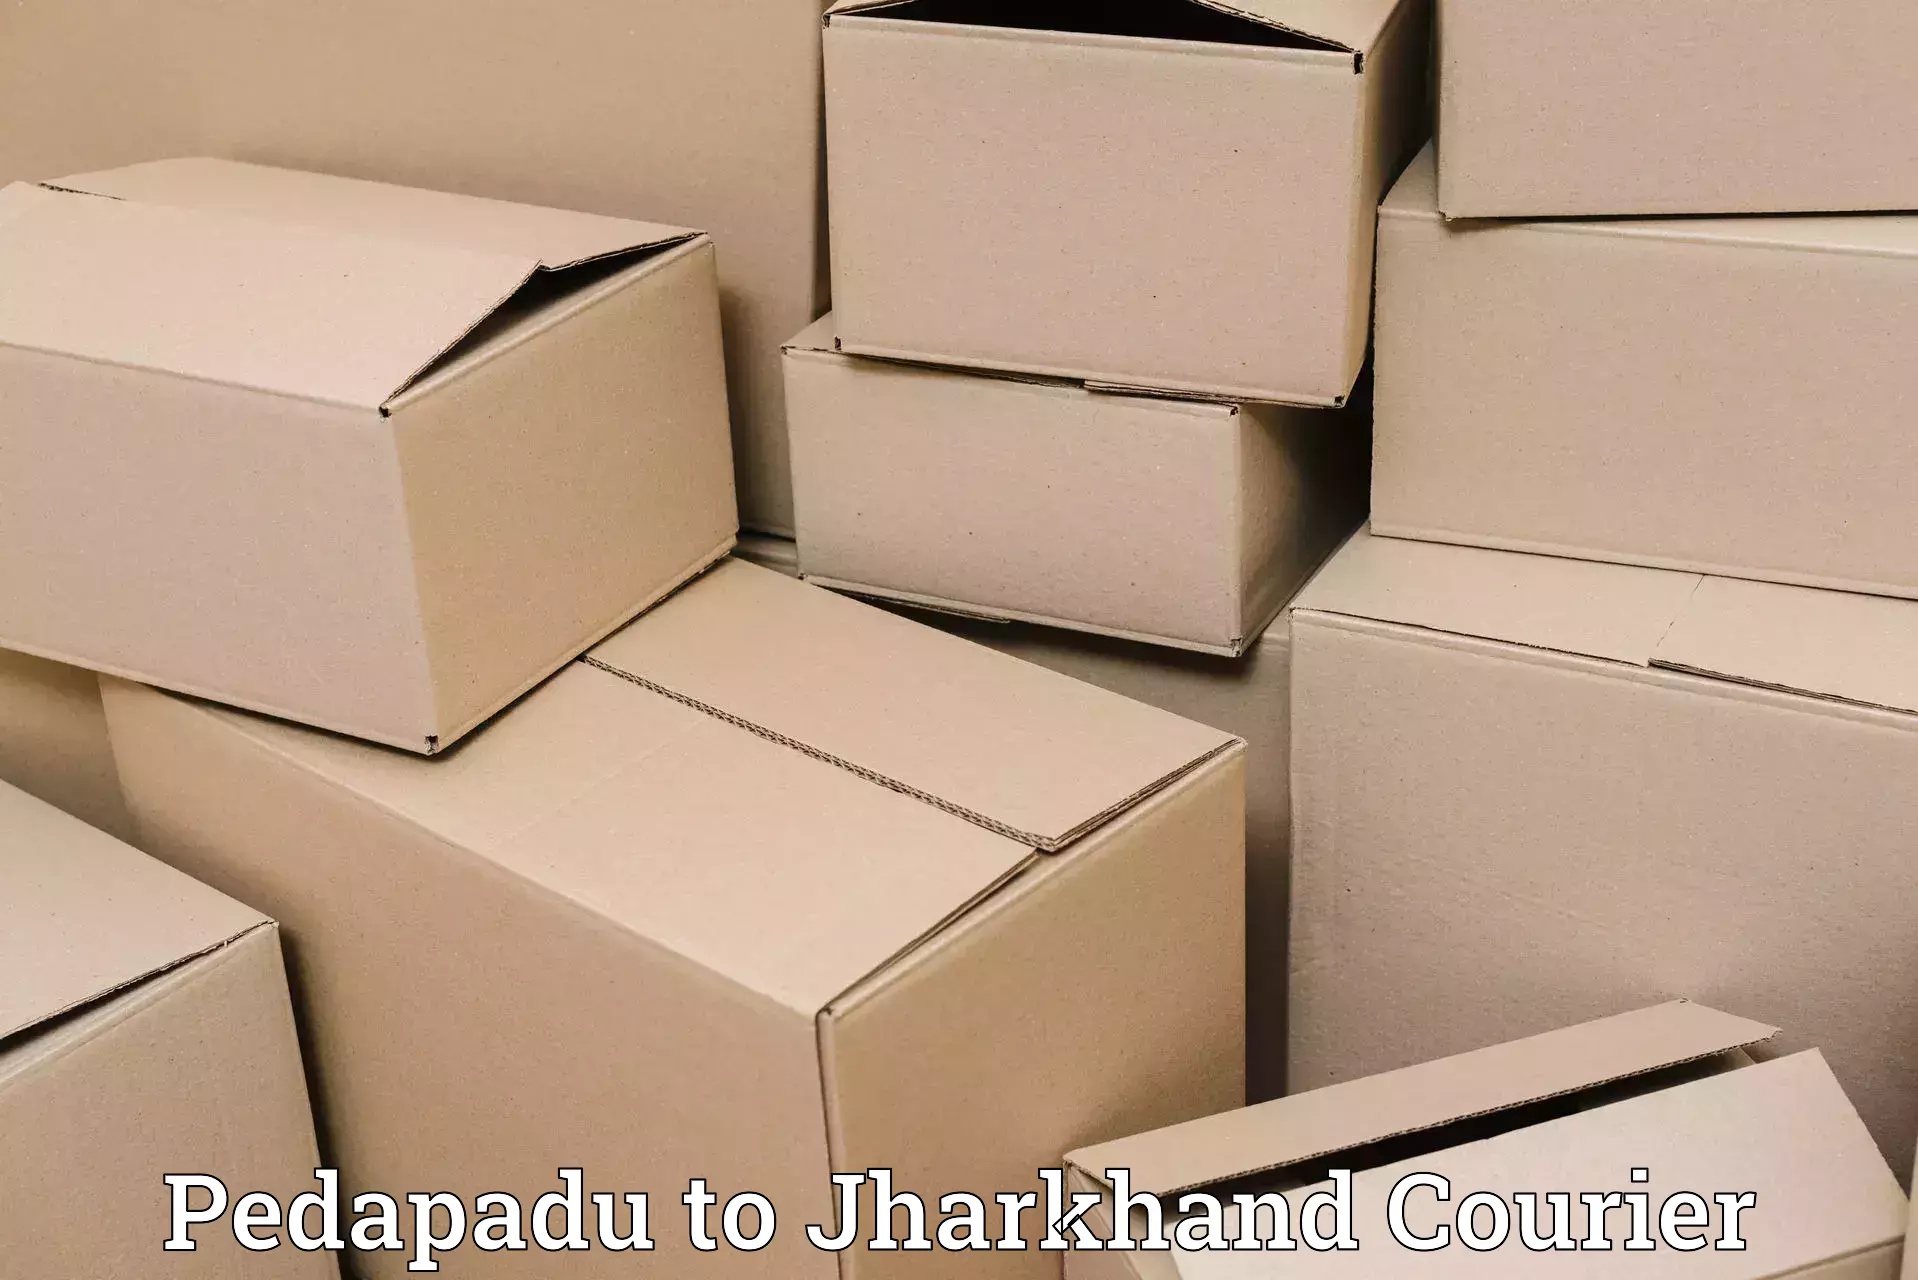 24-hour delivery options Pedapadu to Itkhori